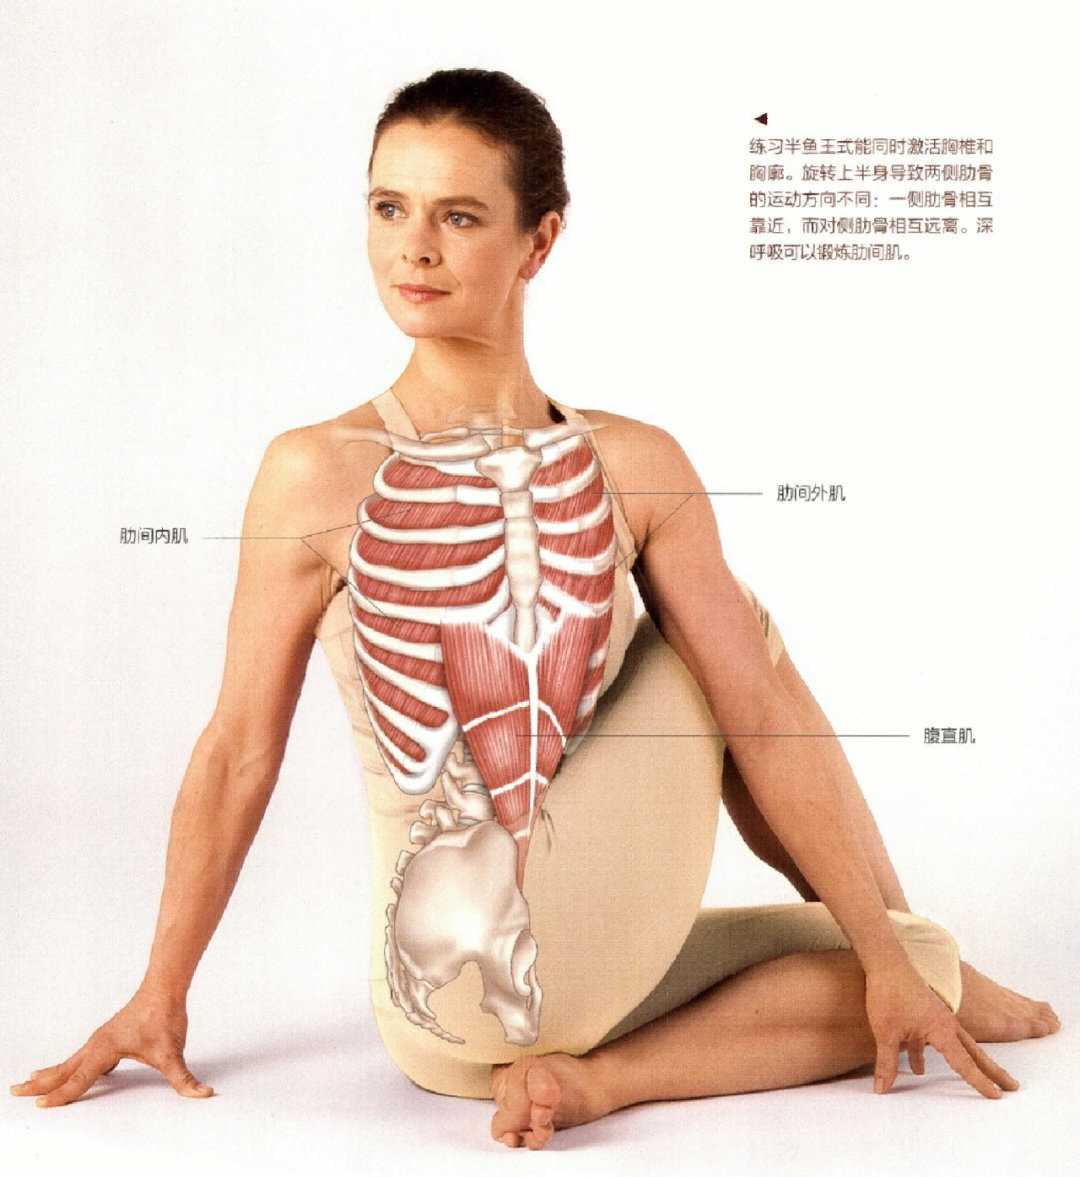 扭转体式2医学瑜伽学习